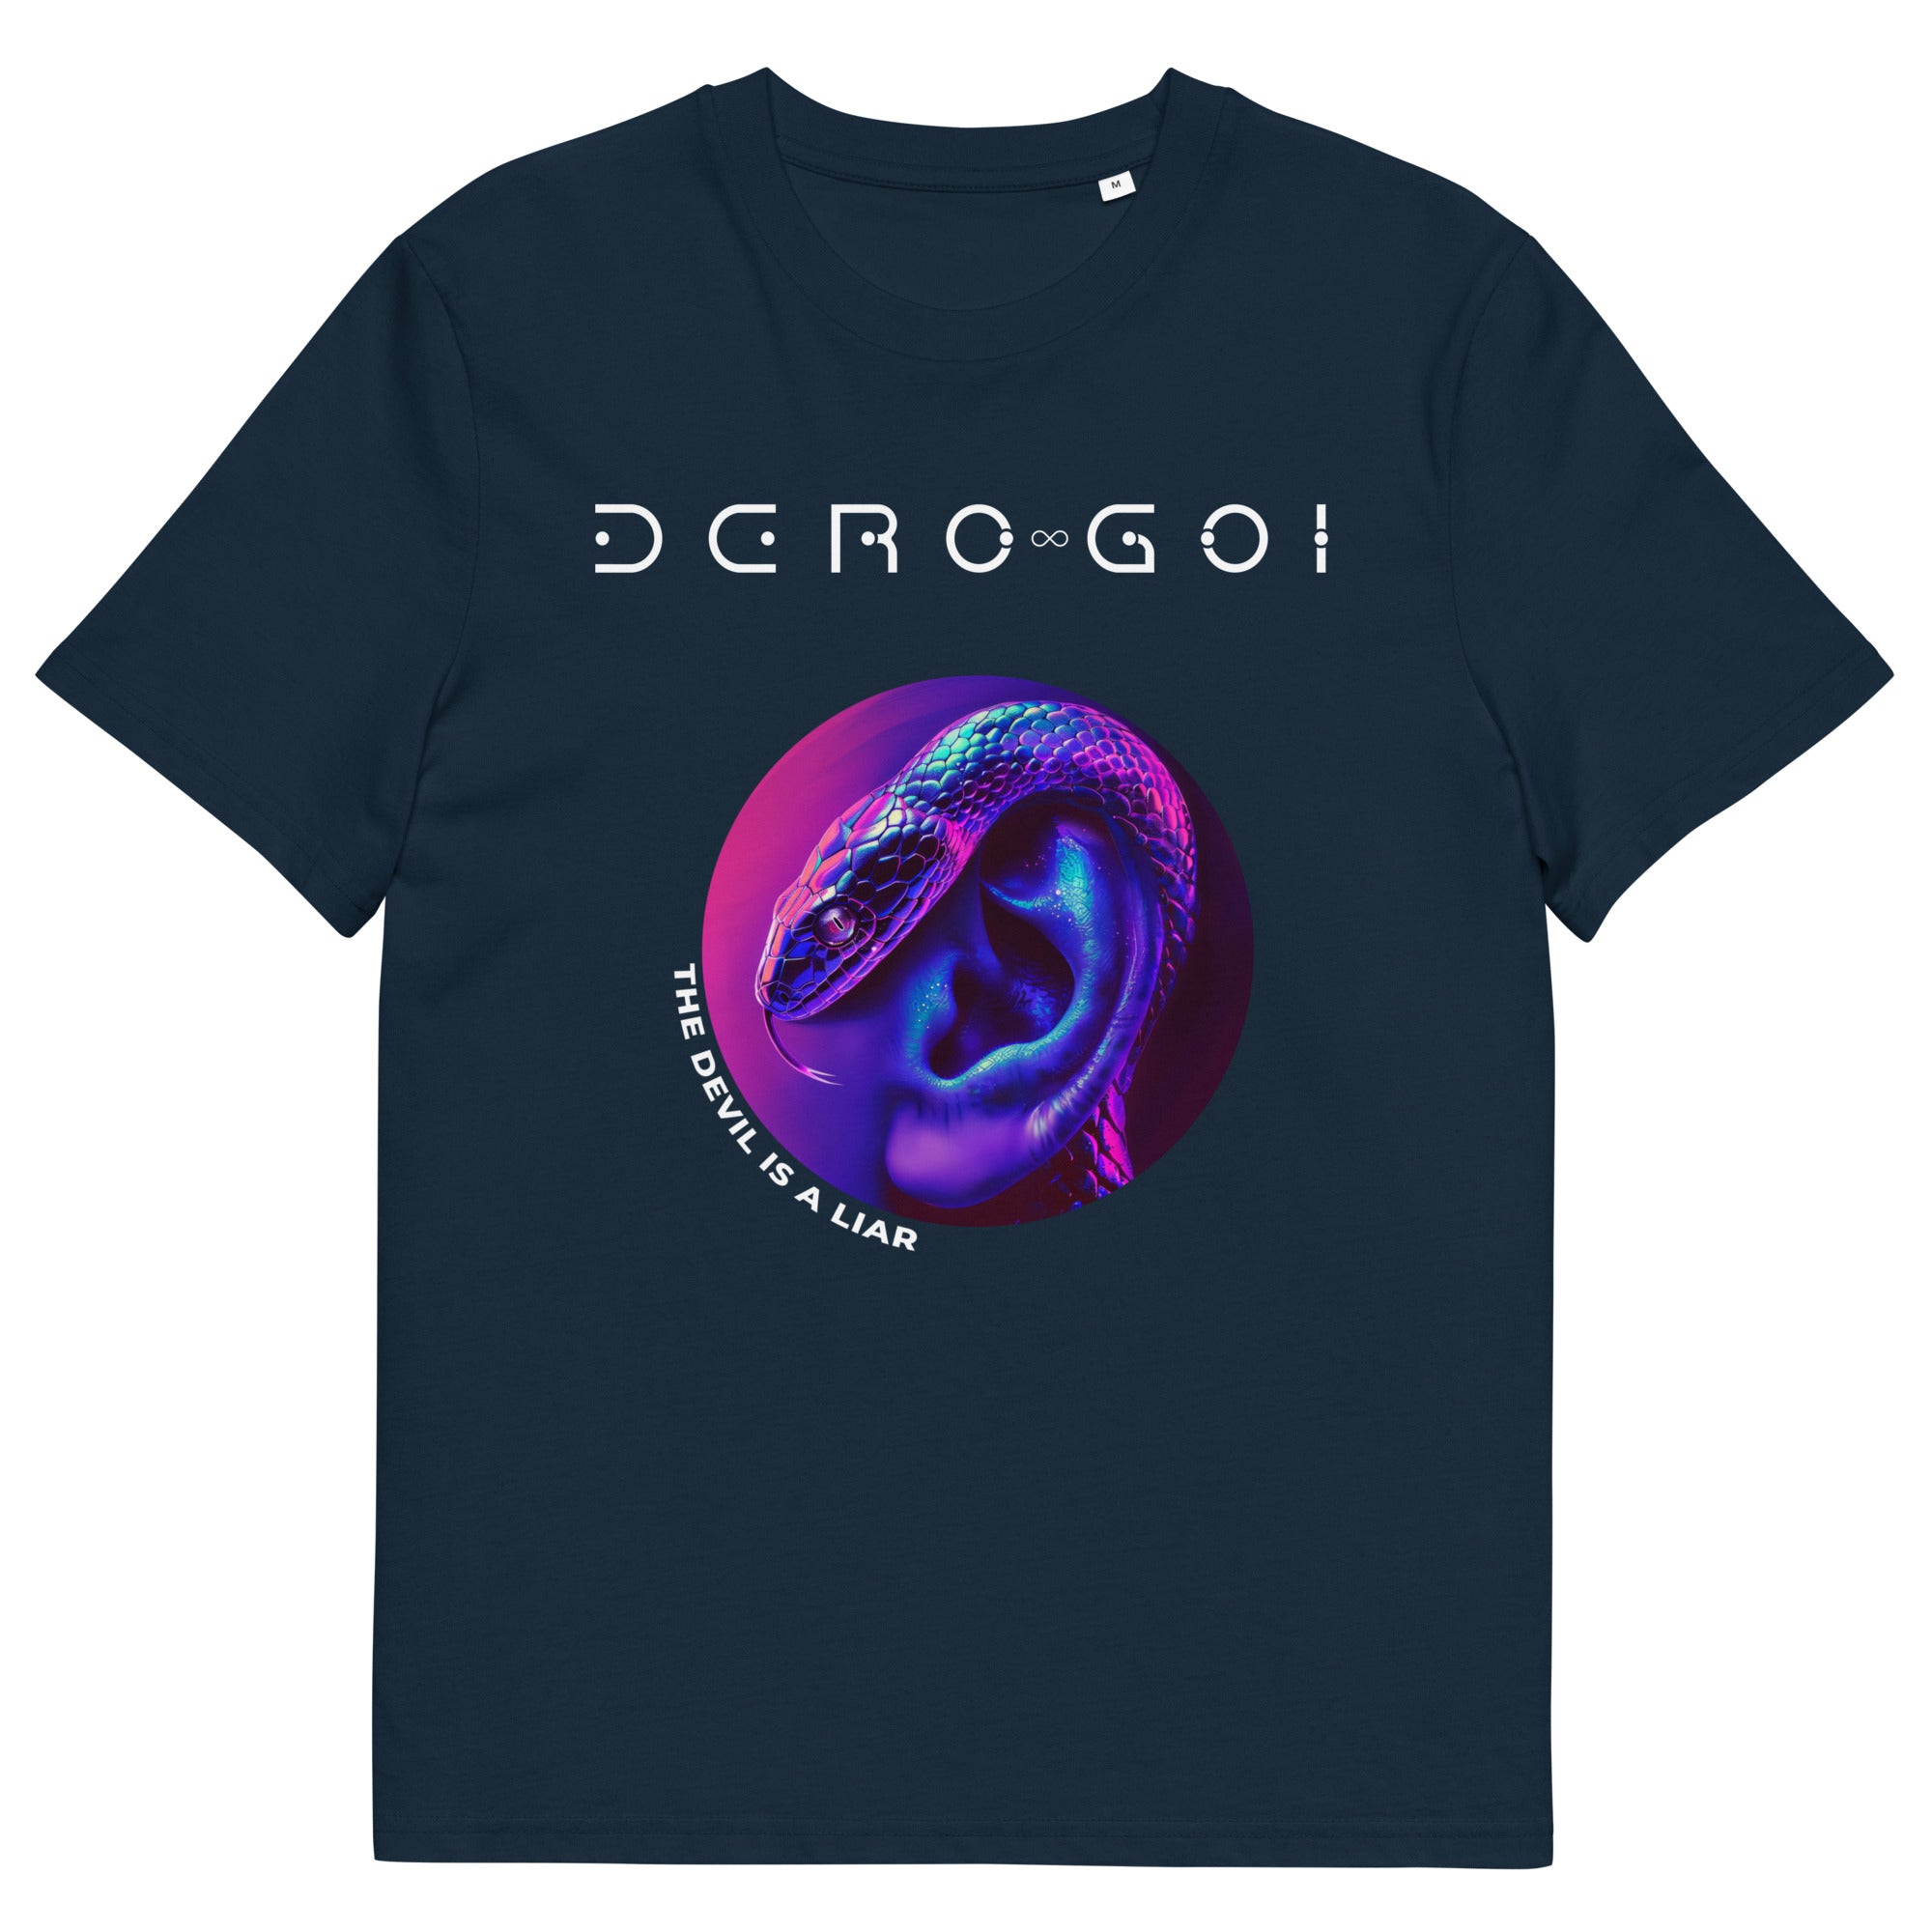 DERO GOI - The Devil is a Liar - Unisex organic cotton t-shirt